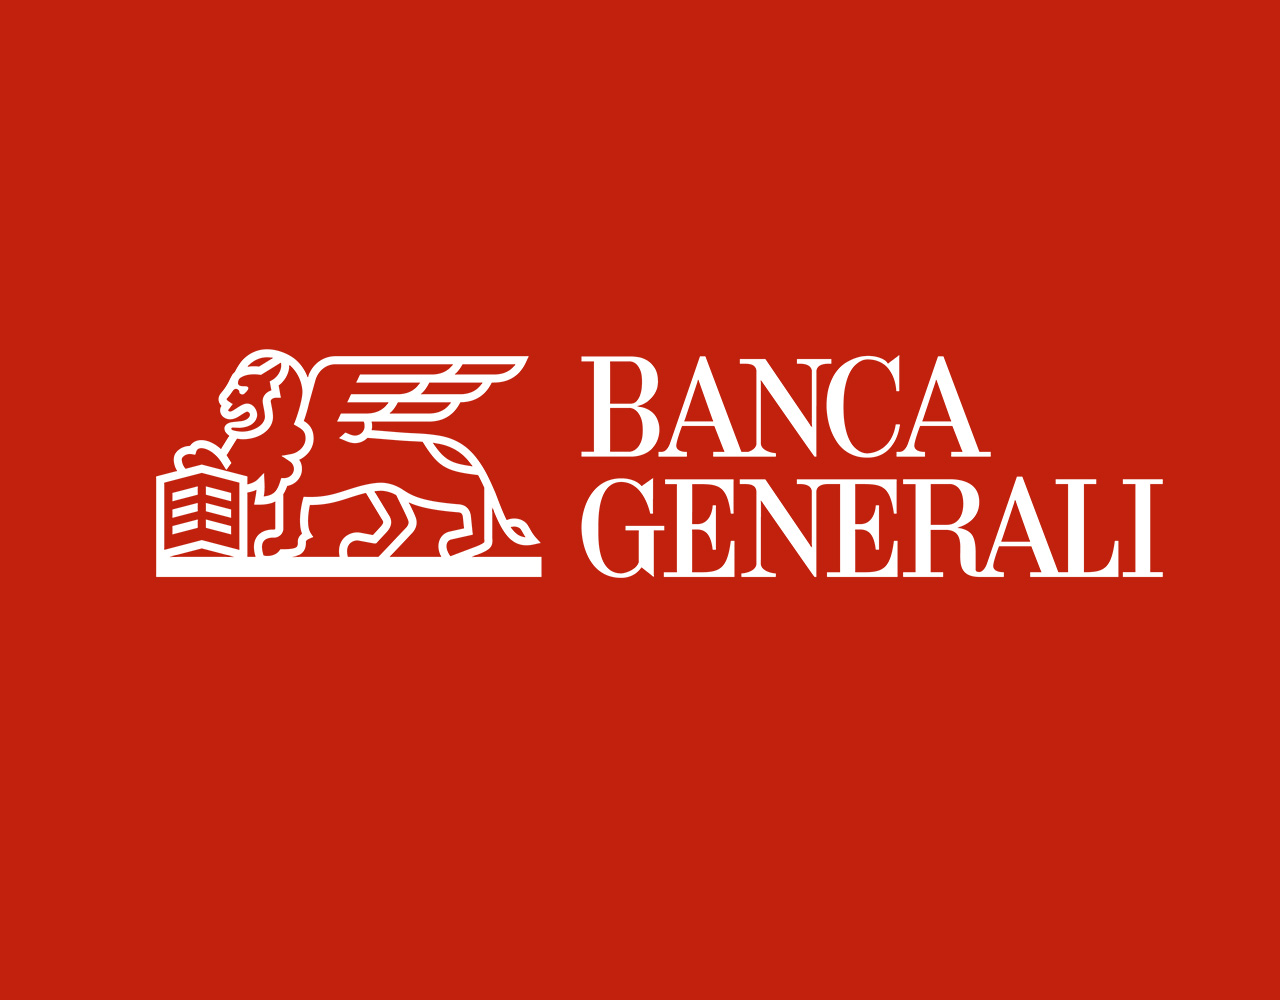 Il percorso sostenibile premia Banca Generali, Standard Ethics alza il rating a “EE+